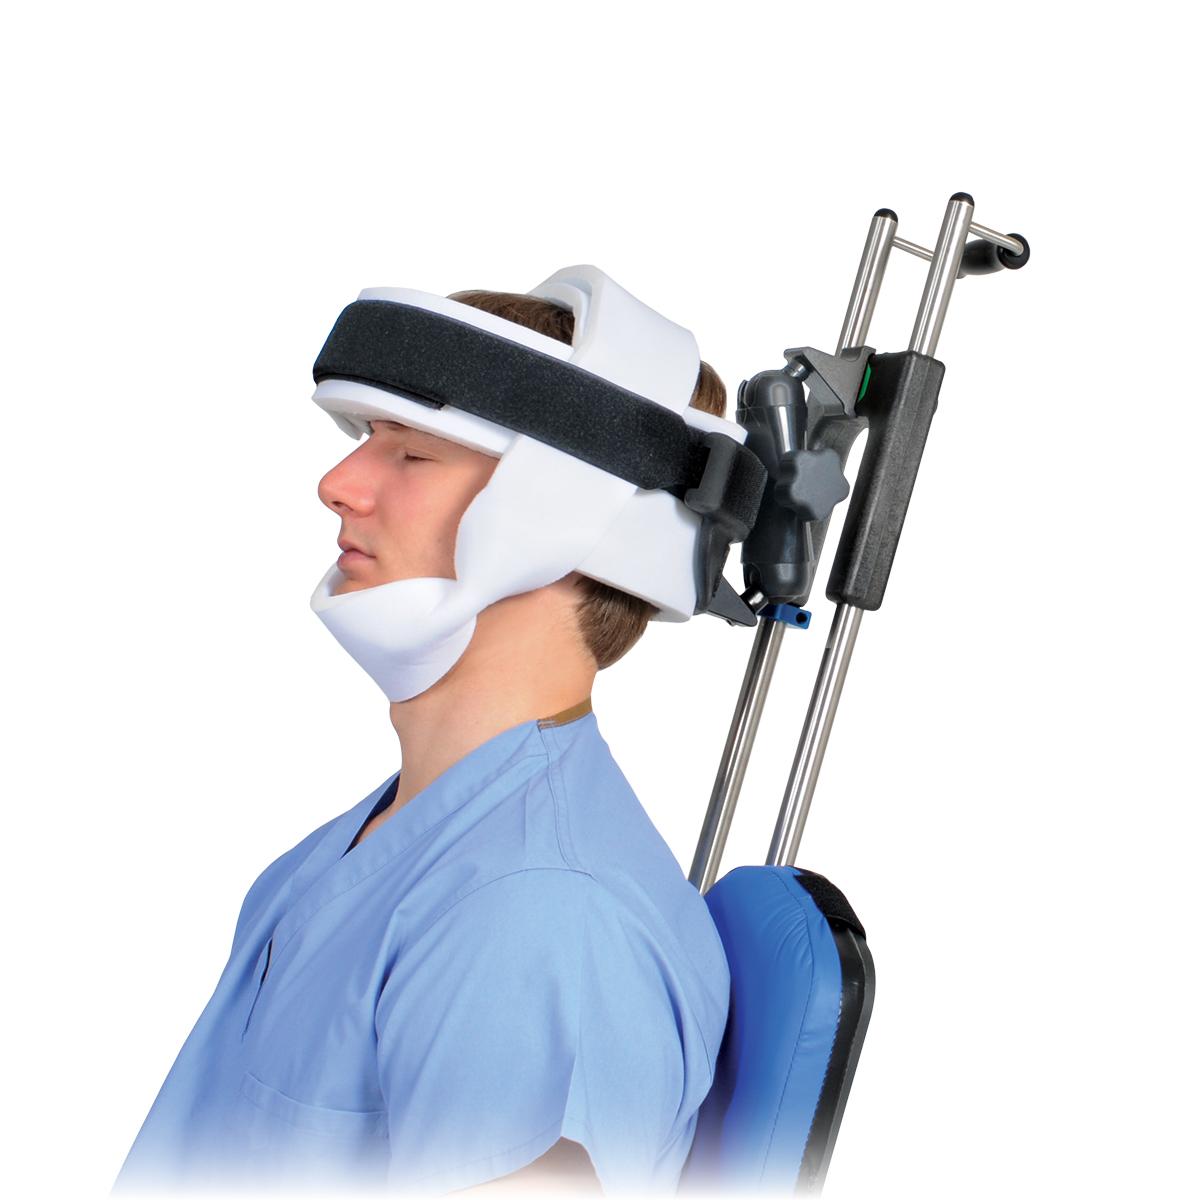 Pozycjoner głowy Universal Head Positioner — widok z boku (z pacjentem)